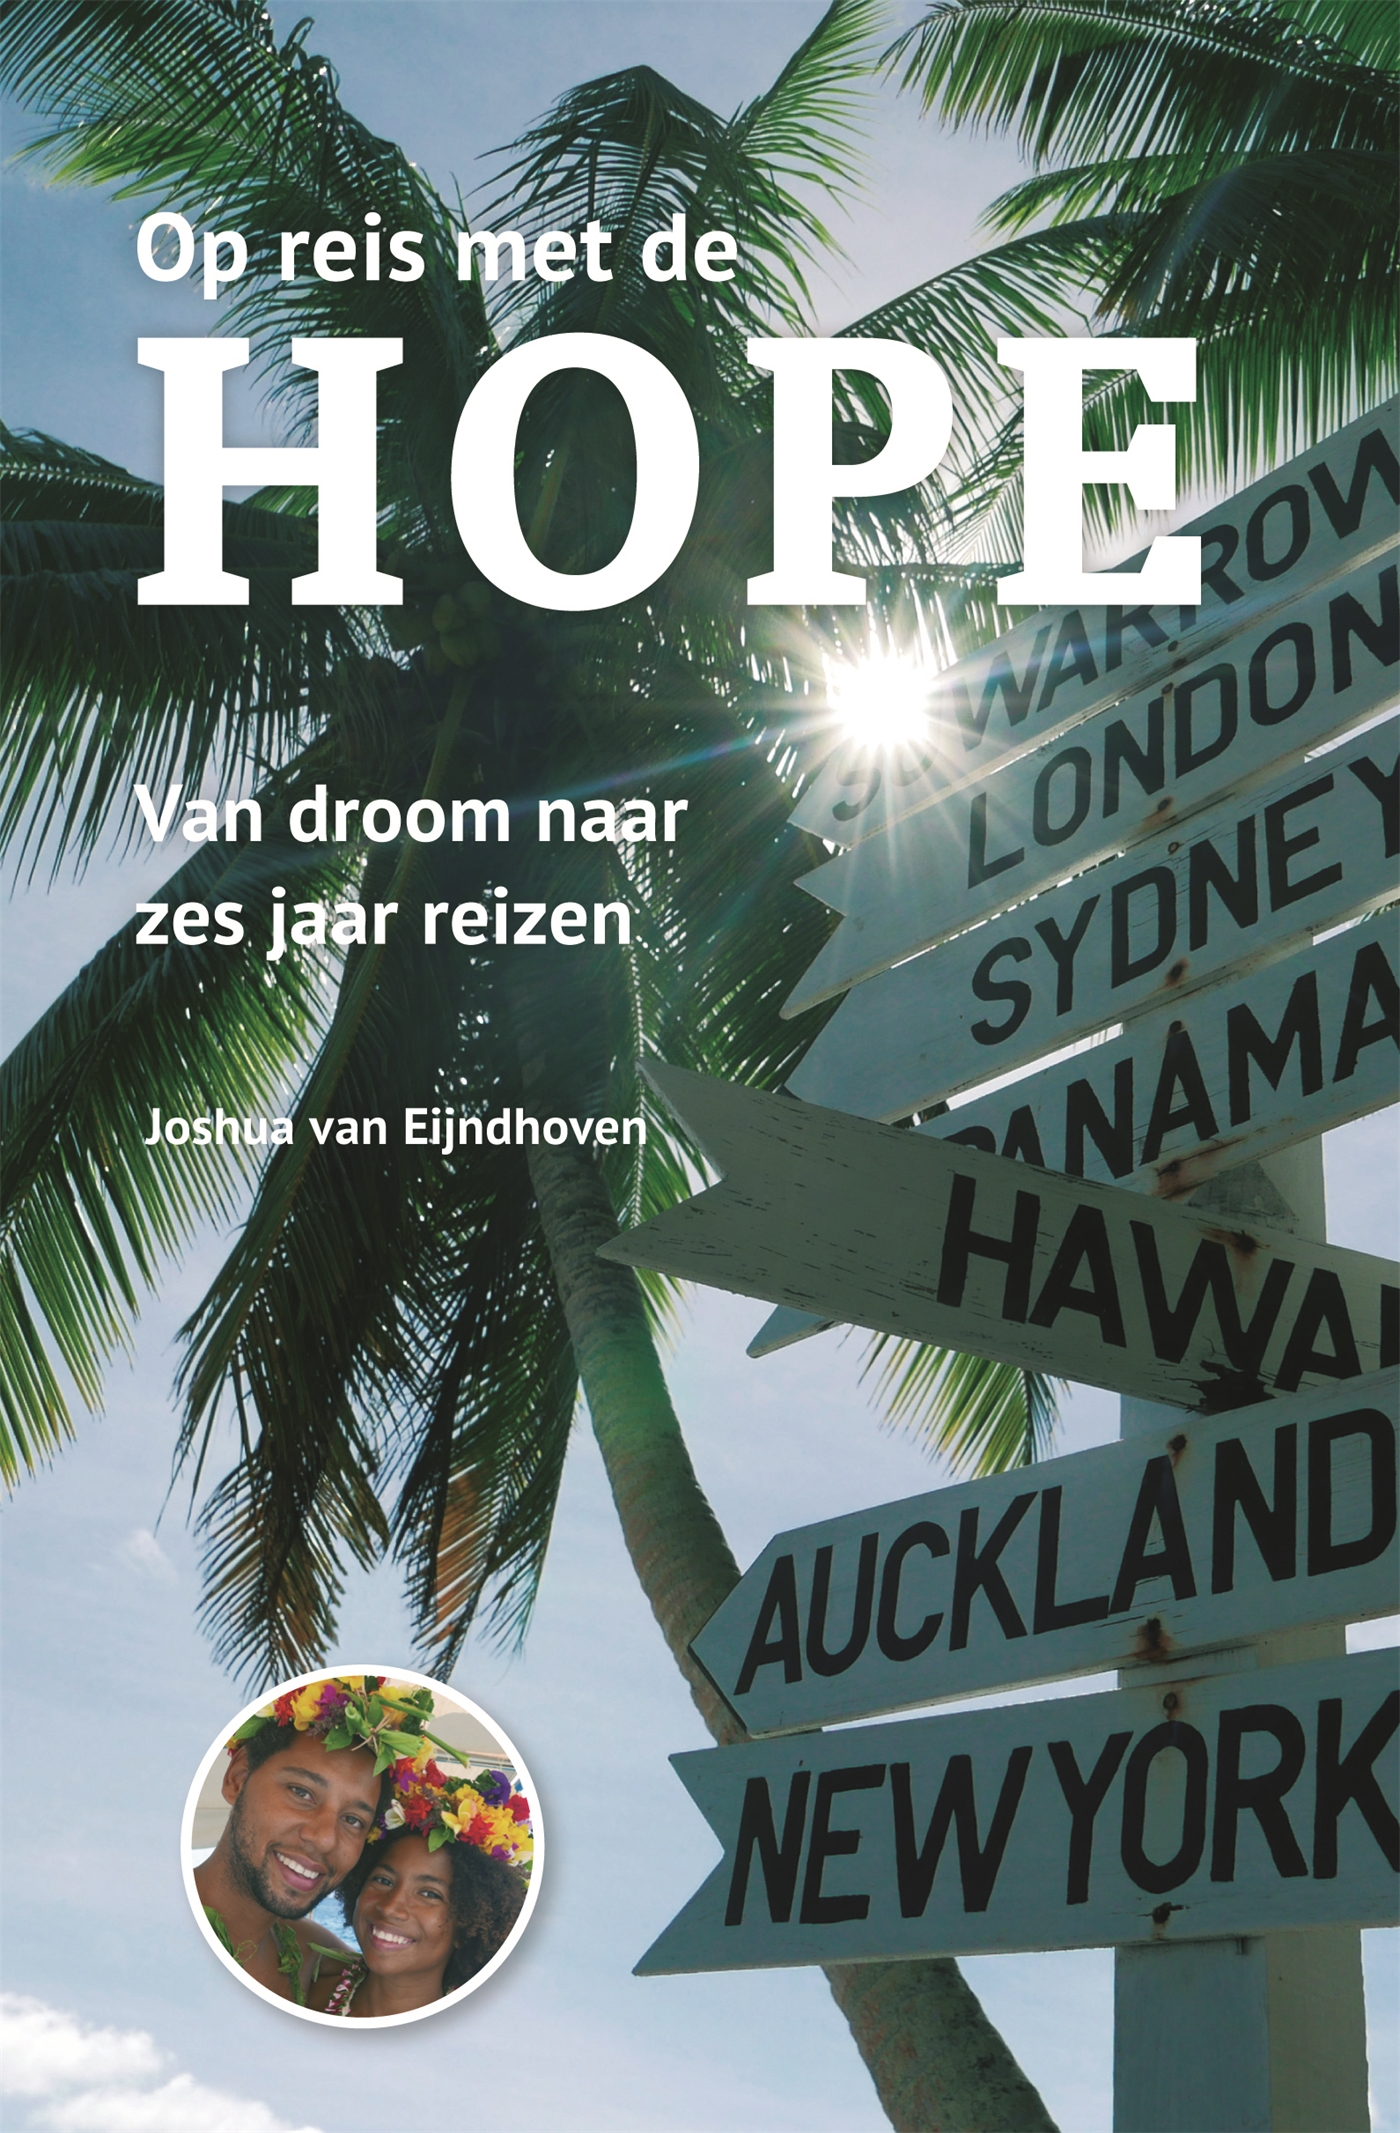 Op reis met de Hope (Ebook)